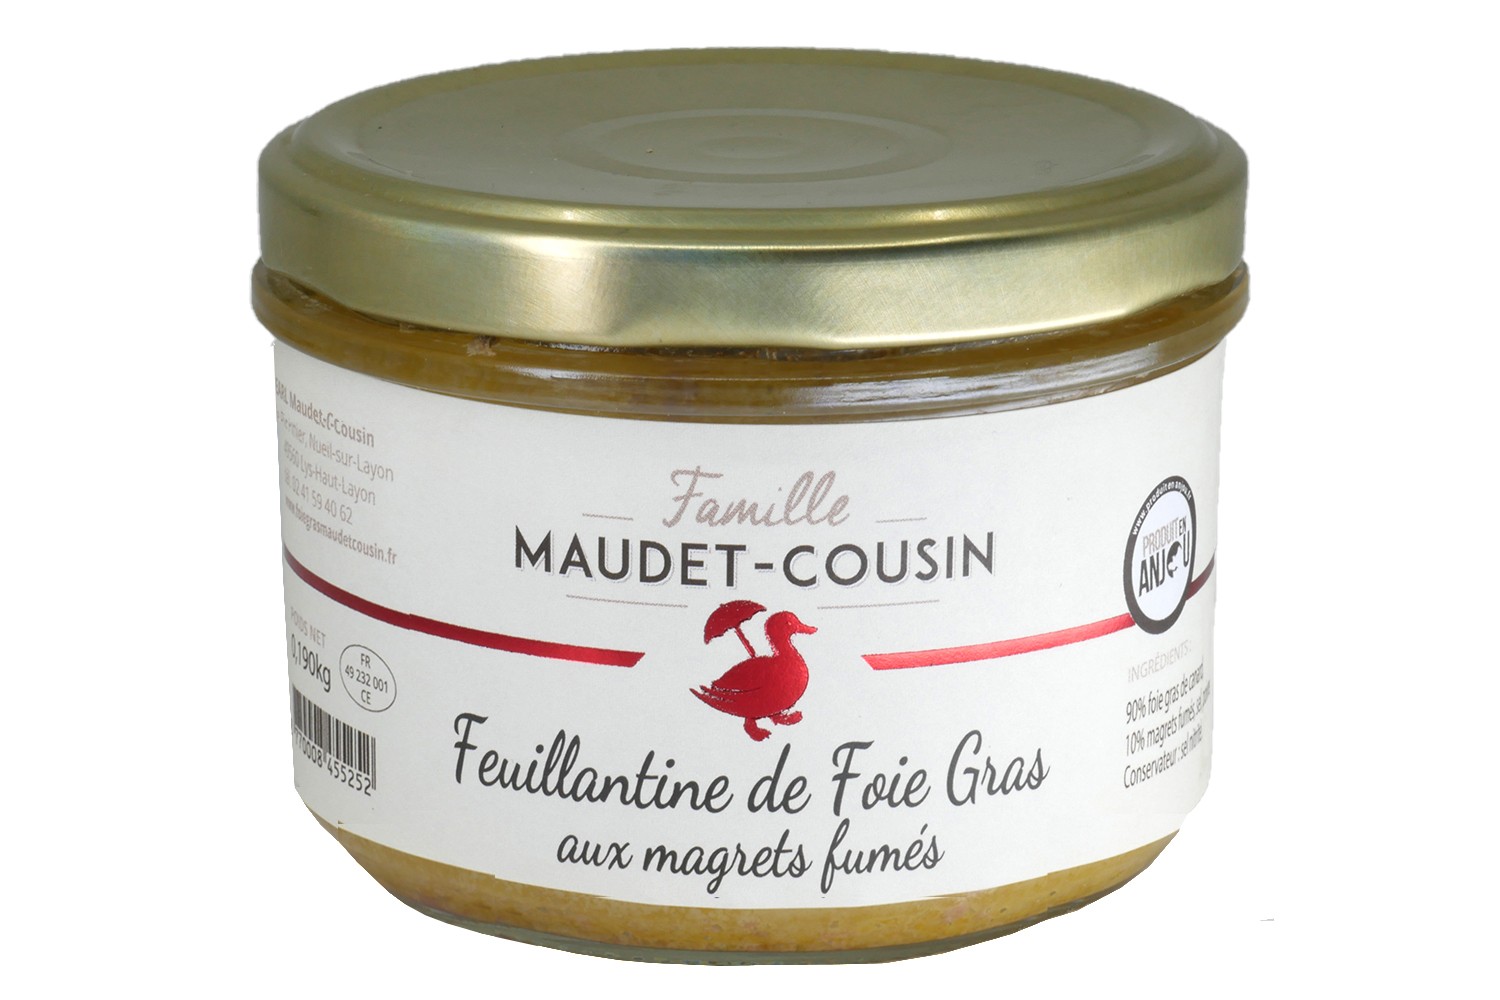 Feuillantine de Foie gras Maudet Cousin